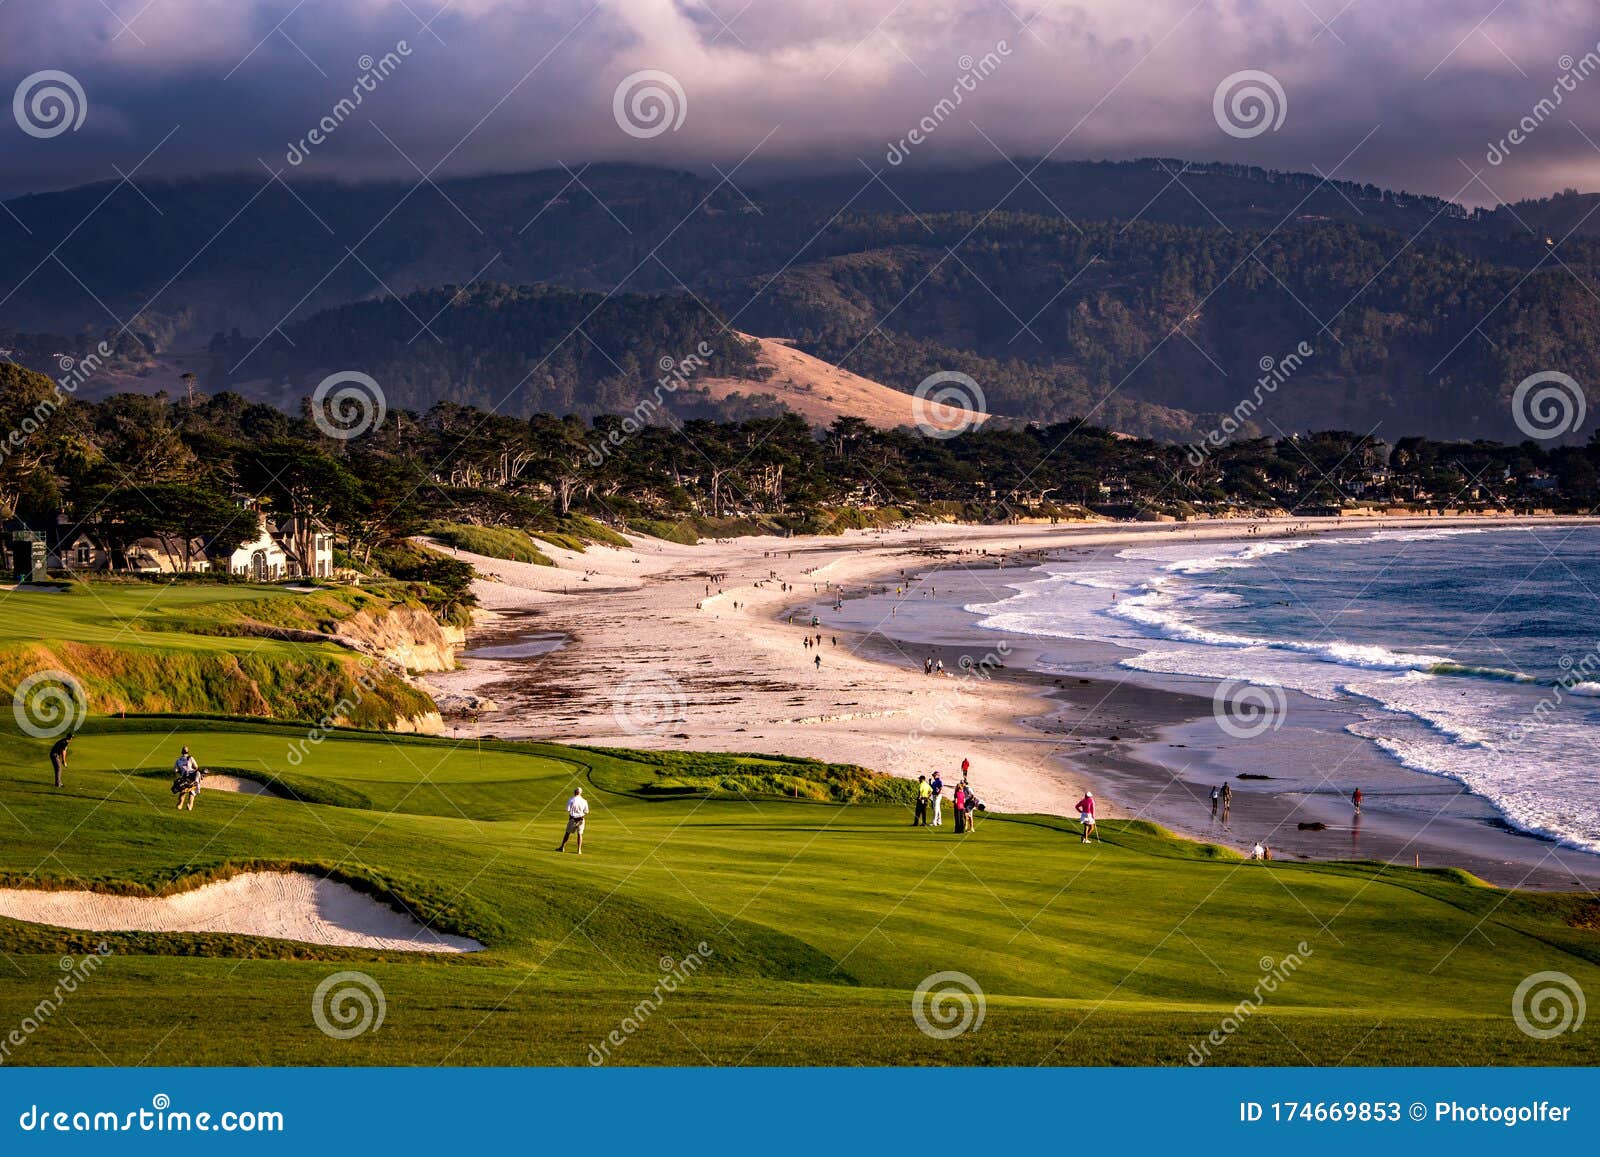 pebble beach golf course, monterey, california